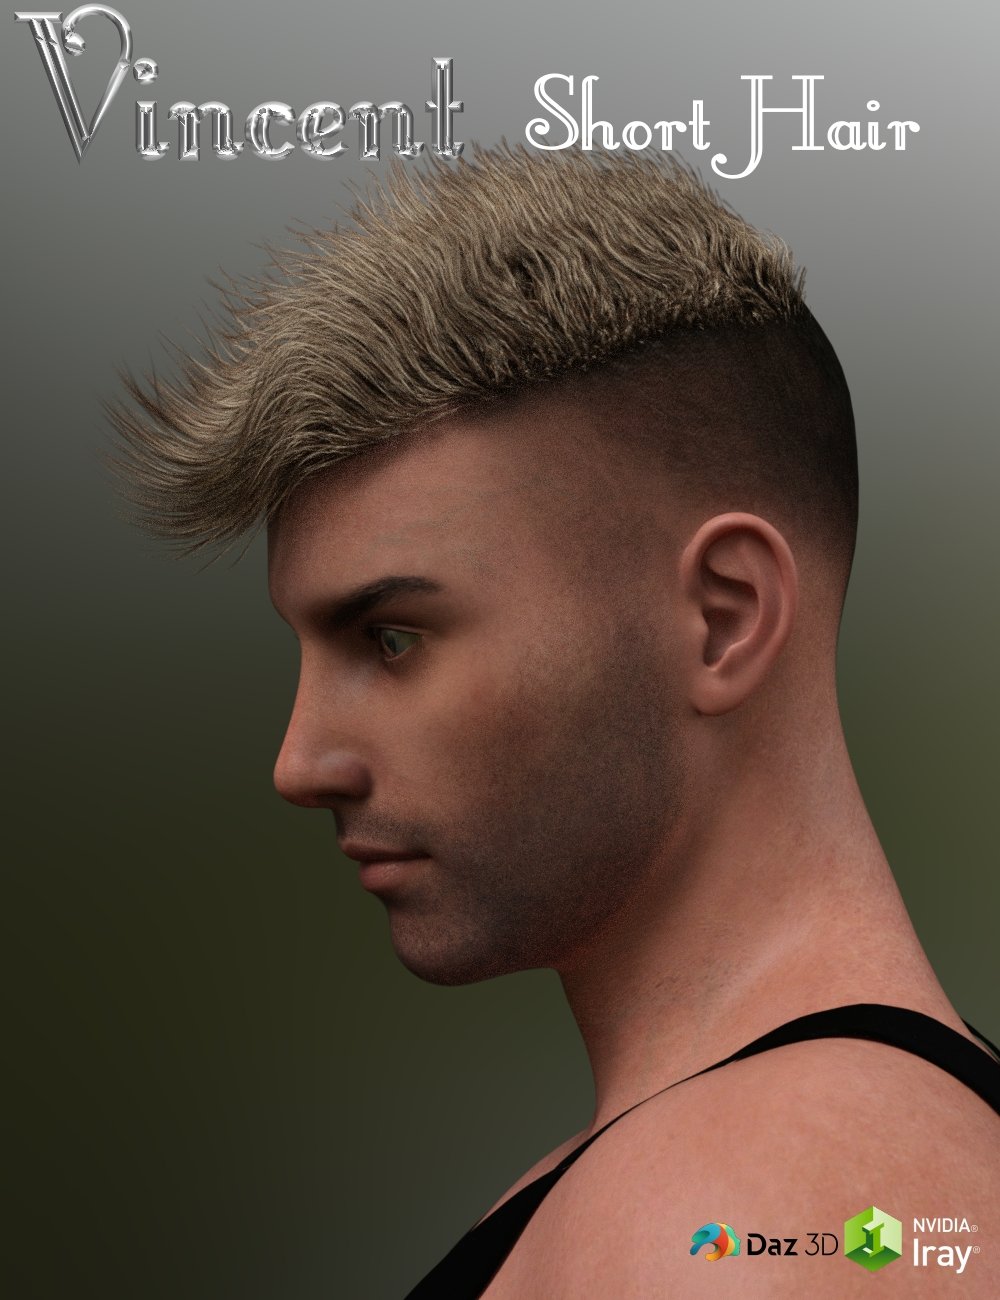 Vincent Short Hair for Genesis 3 Male(s) by: Neftis3D, 3D Models by Daz 3D